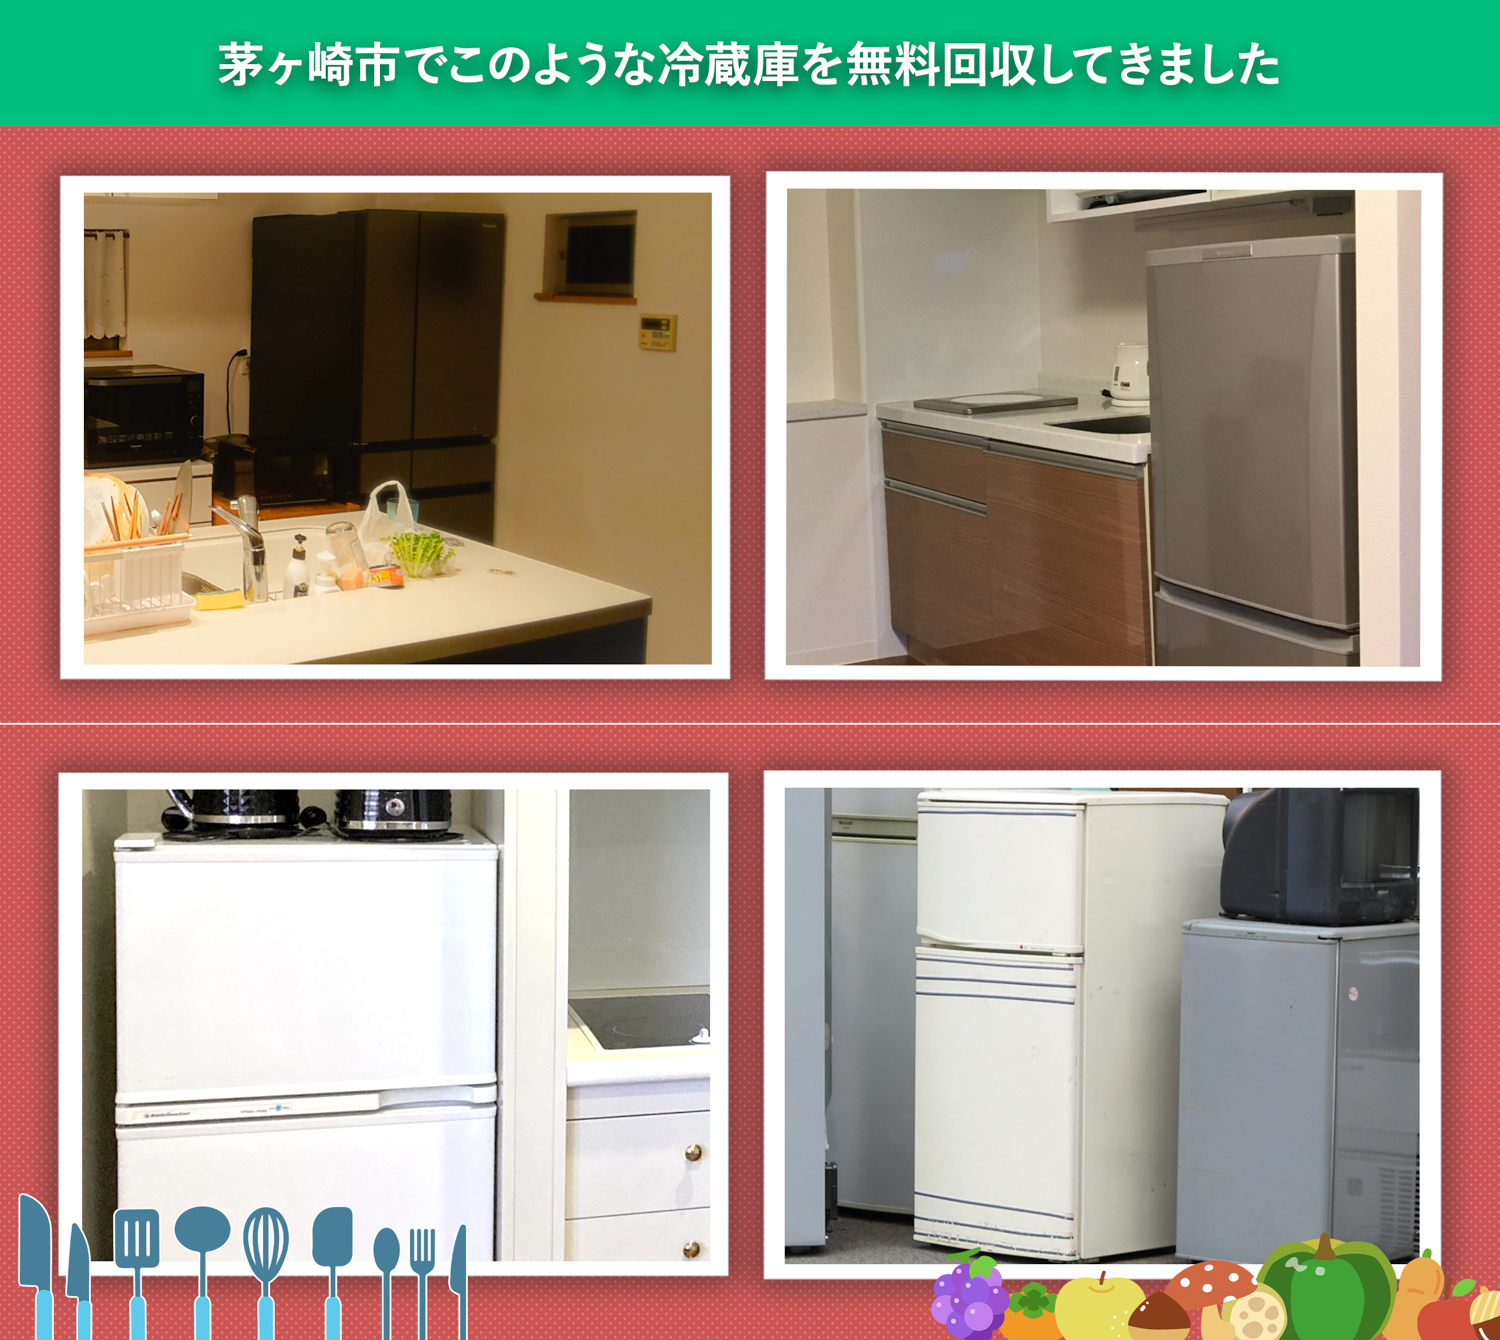 茅ヶ崎市でこのような冷蔵庫を無料回収してきました。